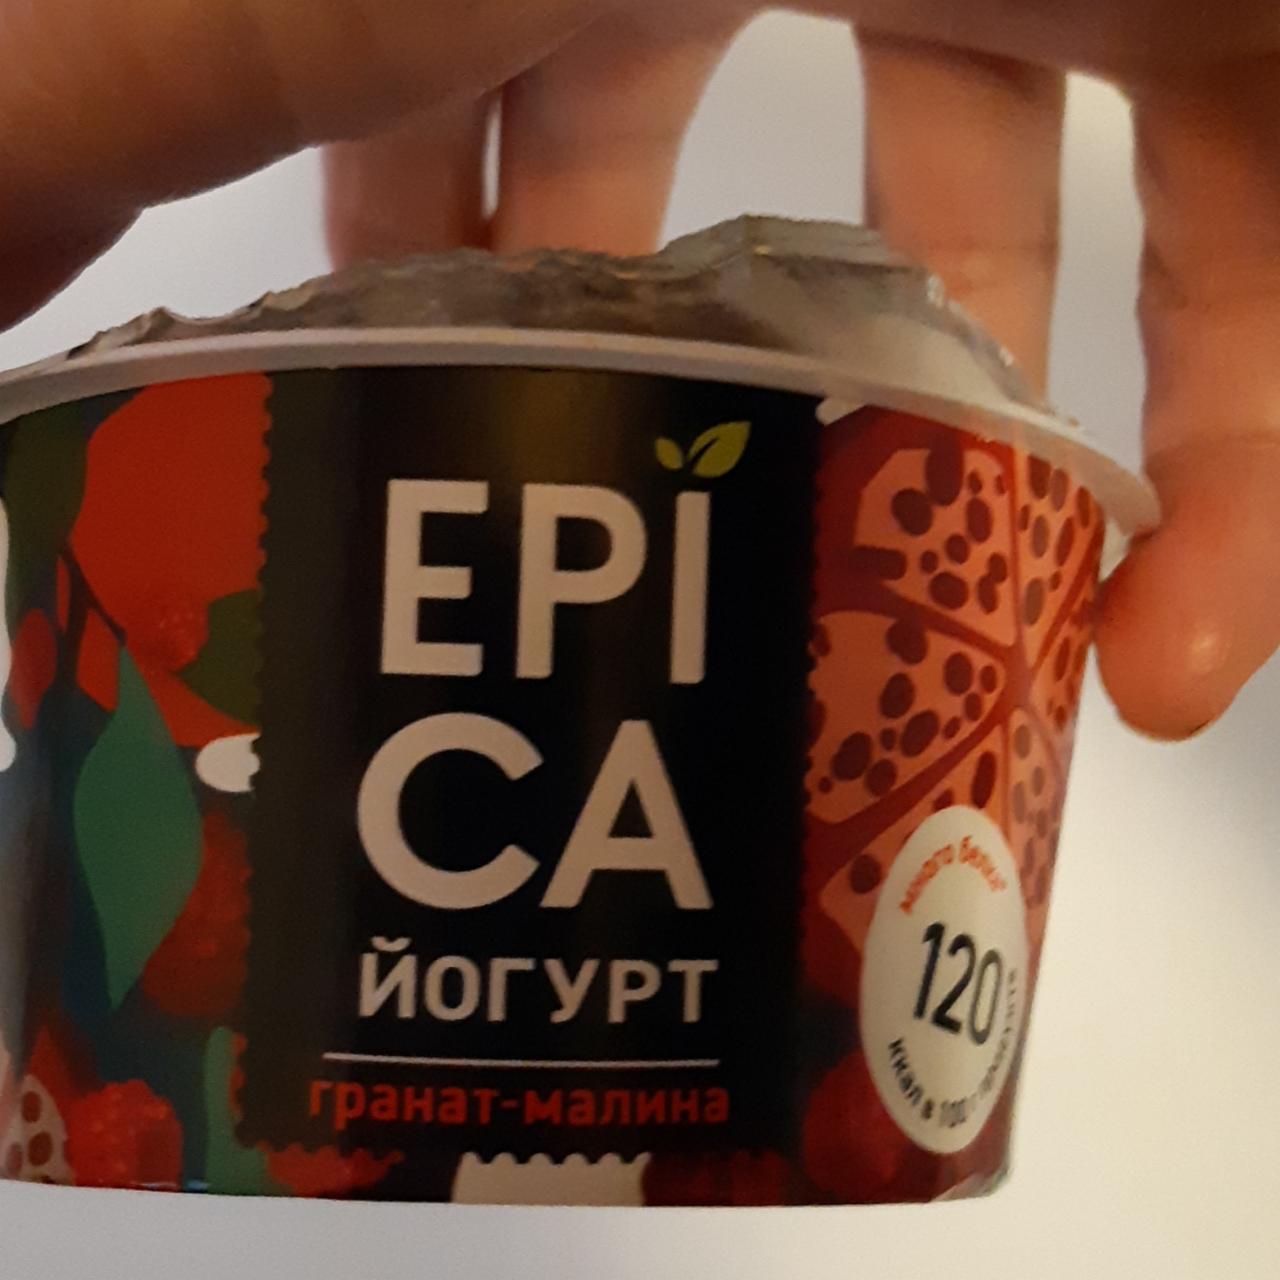 Фото - йогурт гранат-малина Epica